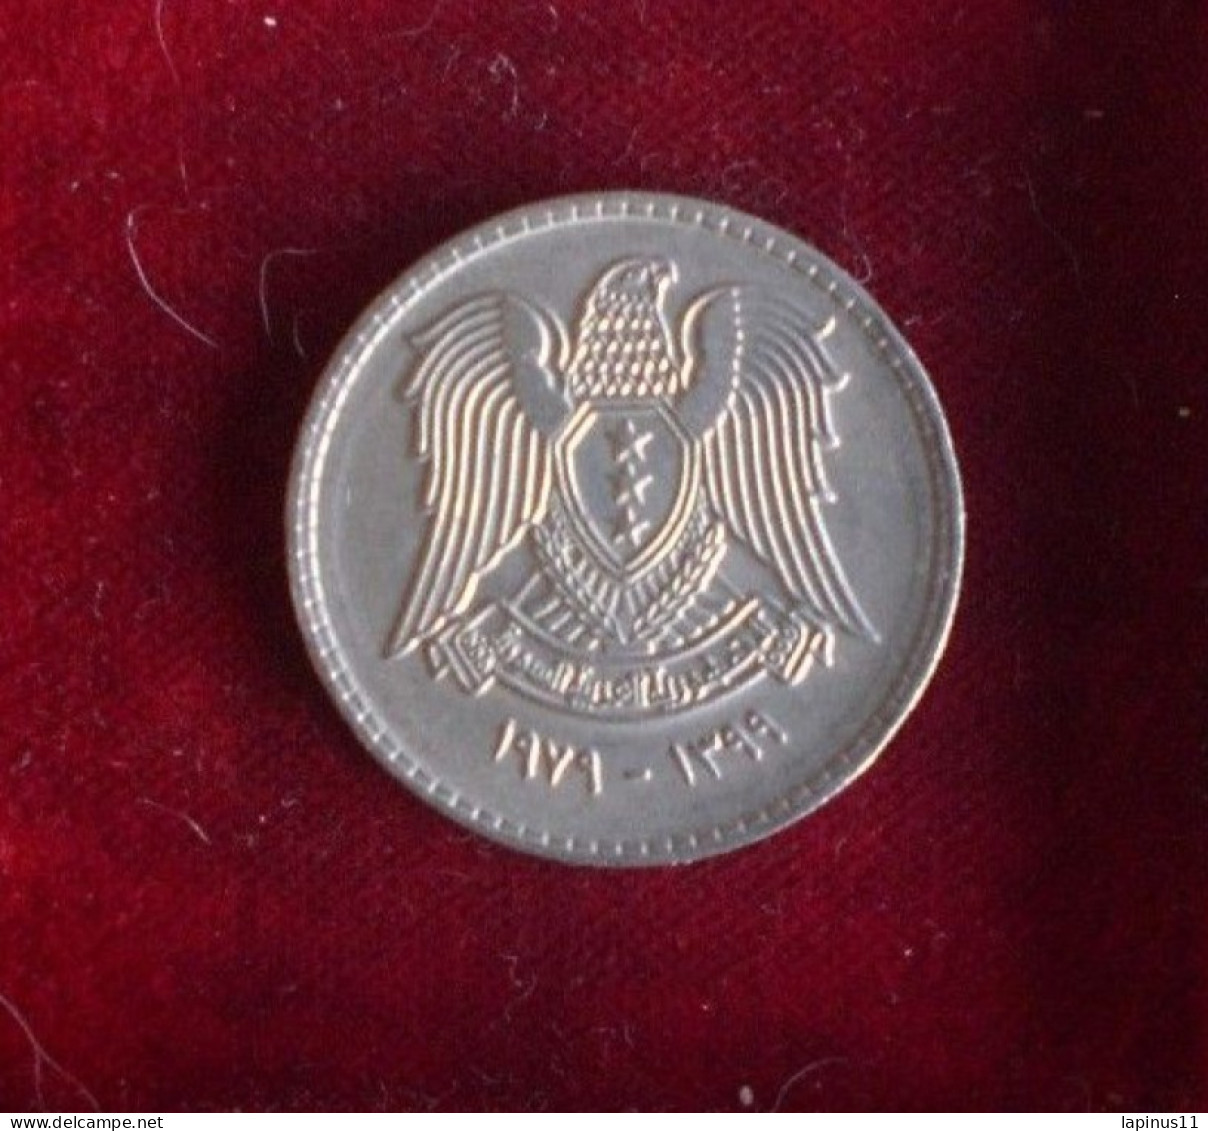 COINS EGITTO 50 PIASTRE 1971 - Egitto